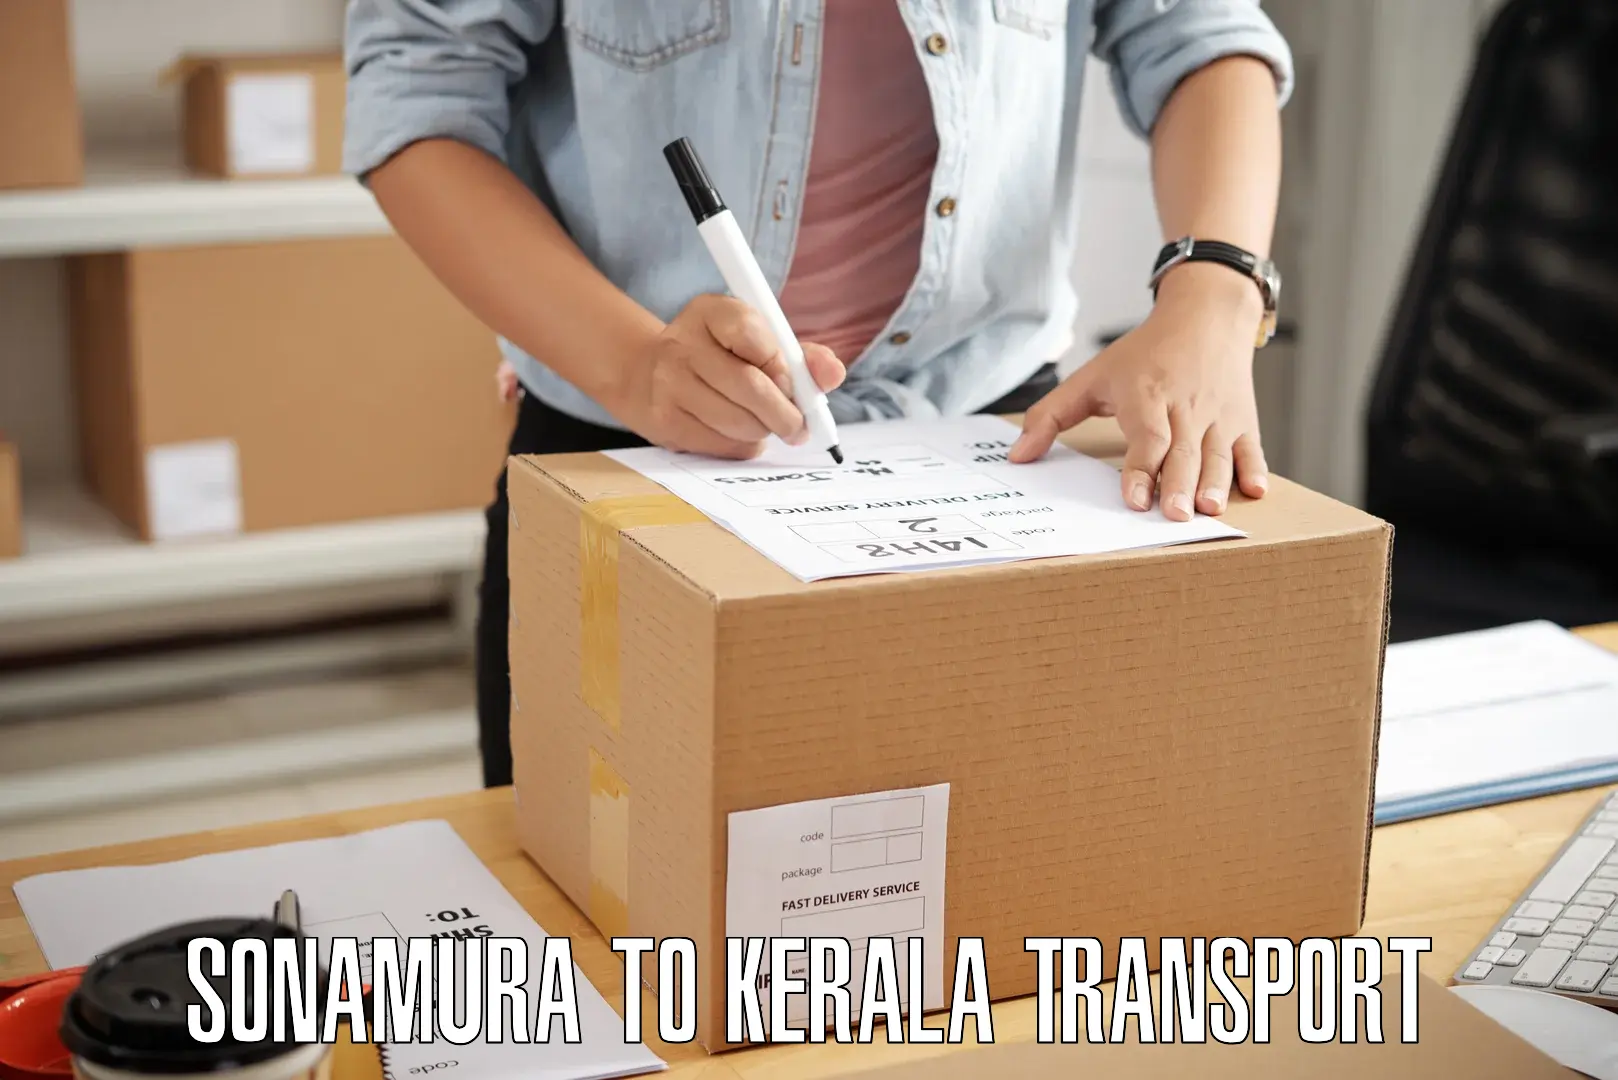 Container transportation services Sonamura to Trivandrum